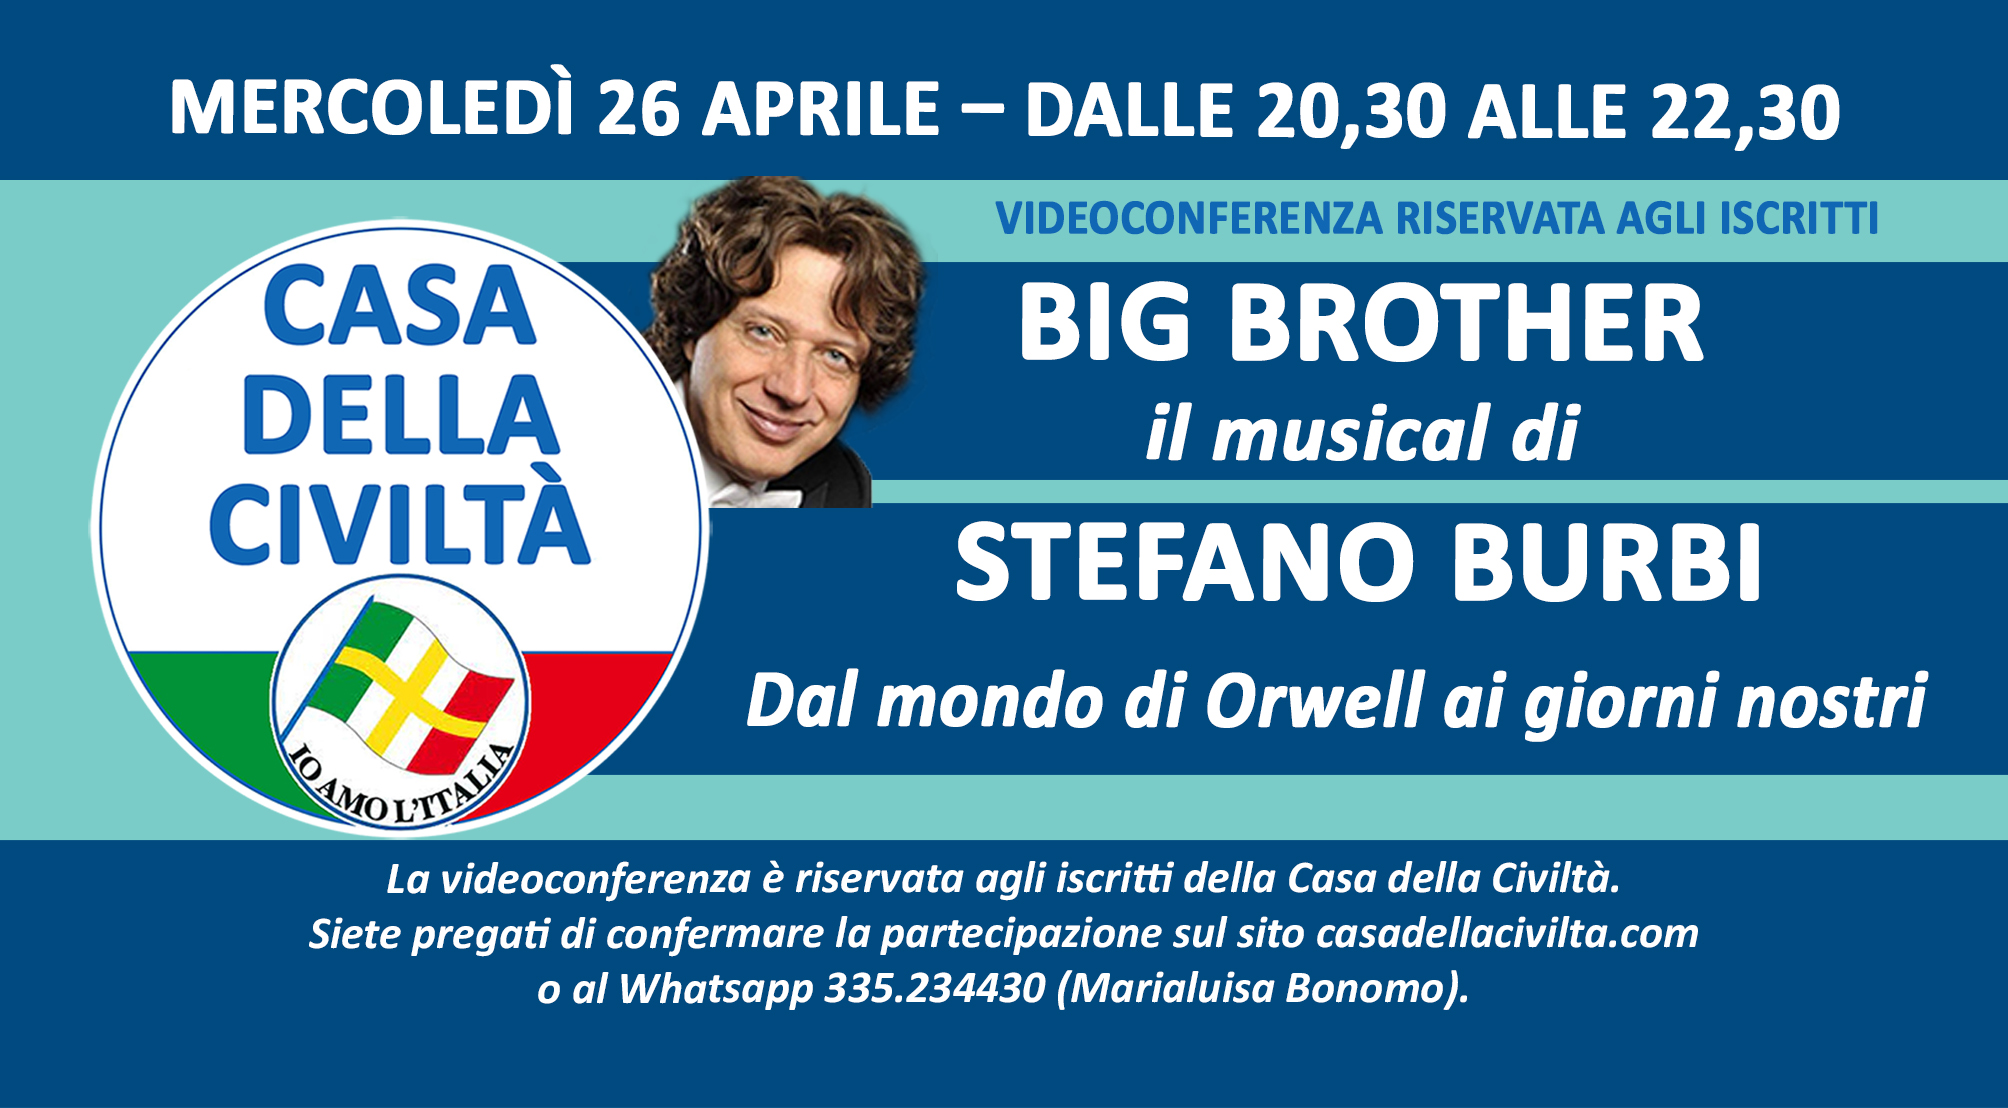 Videoconferenza di STEFANO BURBI sul suo Musical “BIG BROTHER” (Mercoledì 26 aprile, ore 20,30)